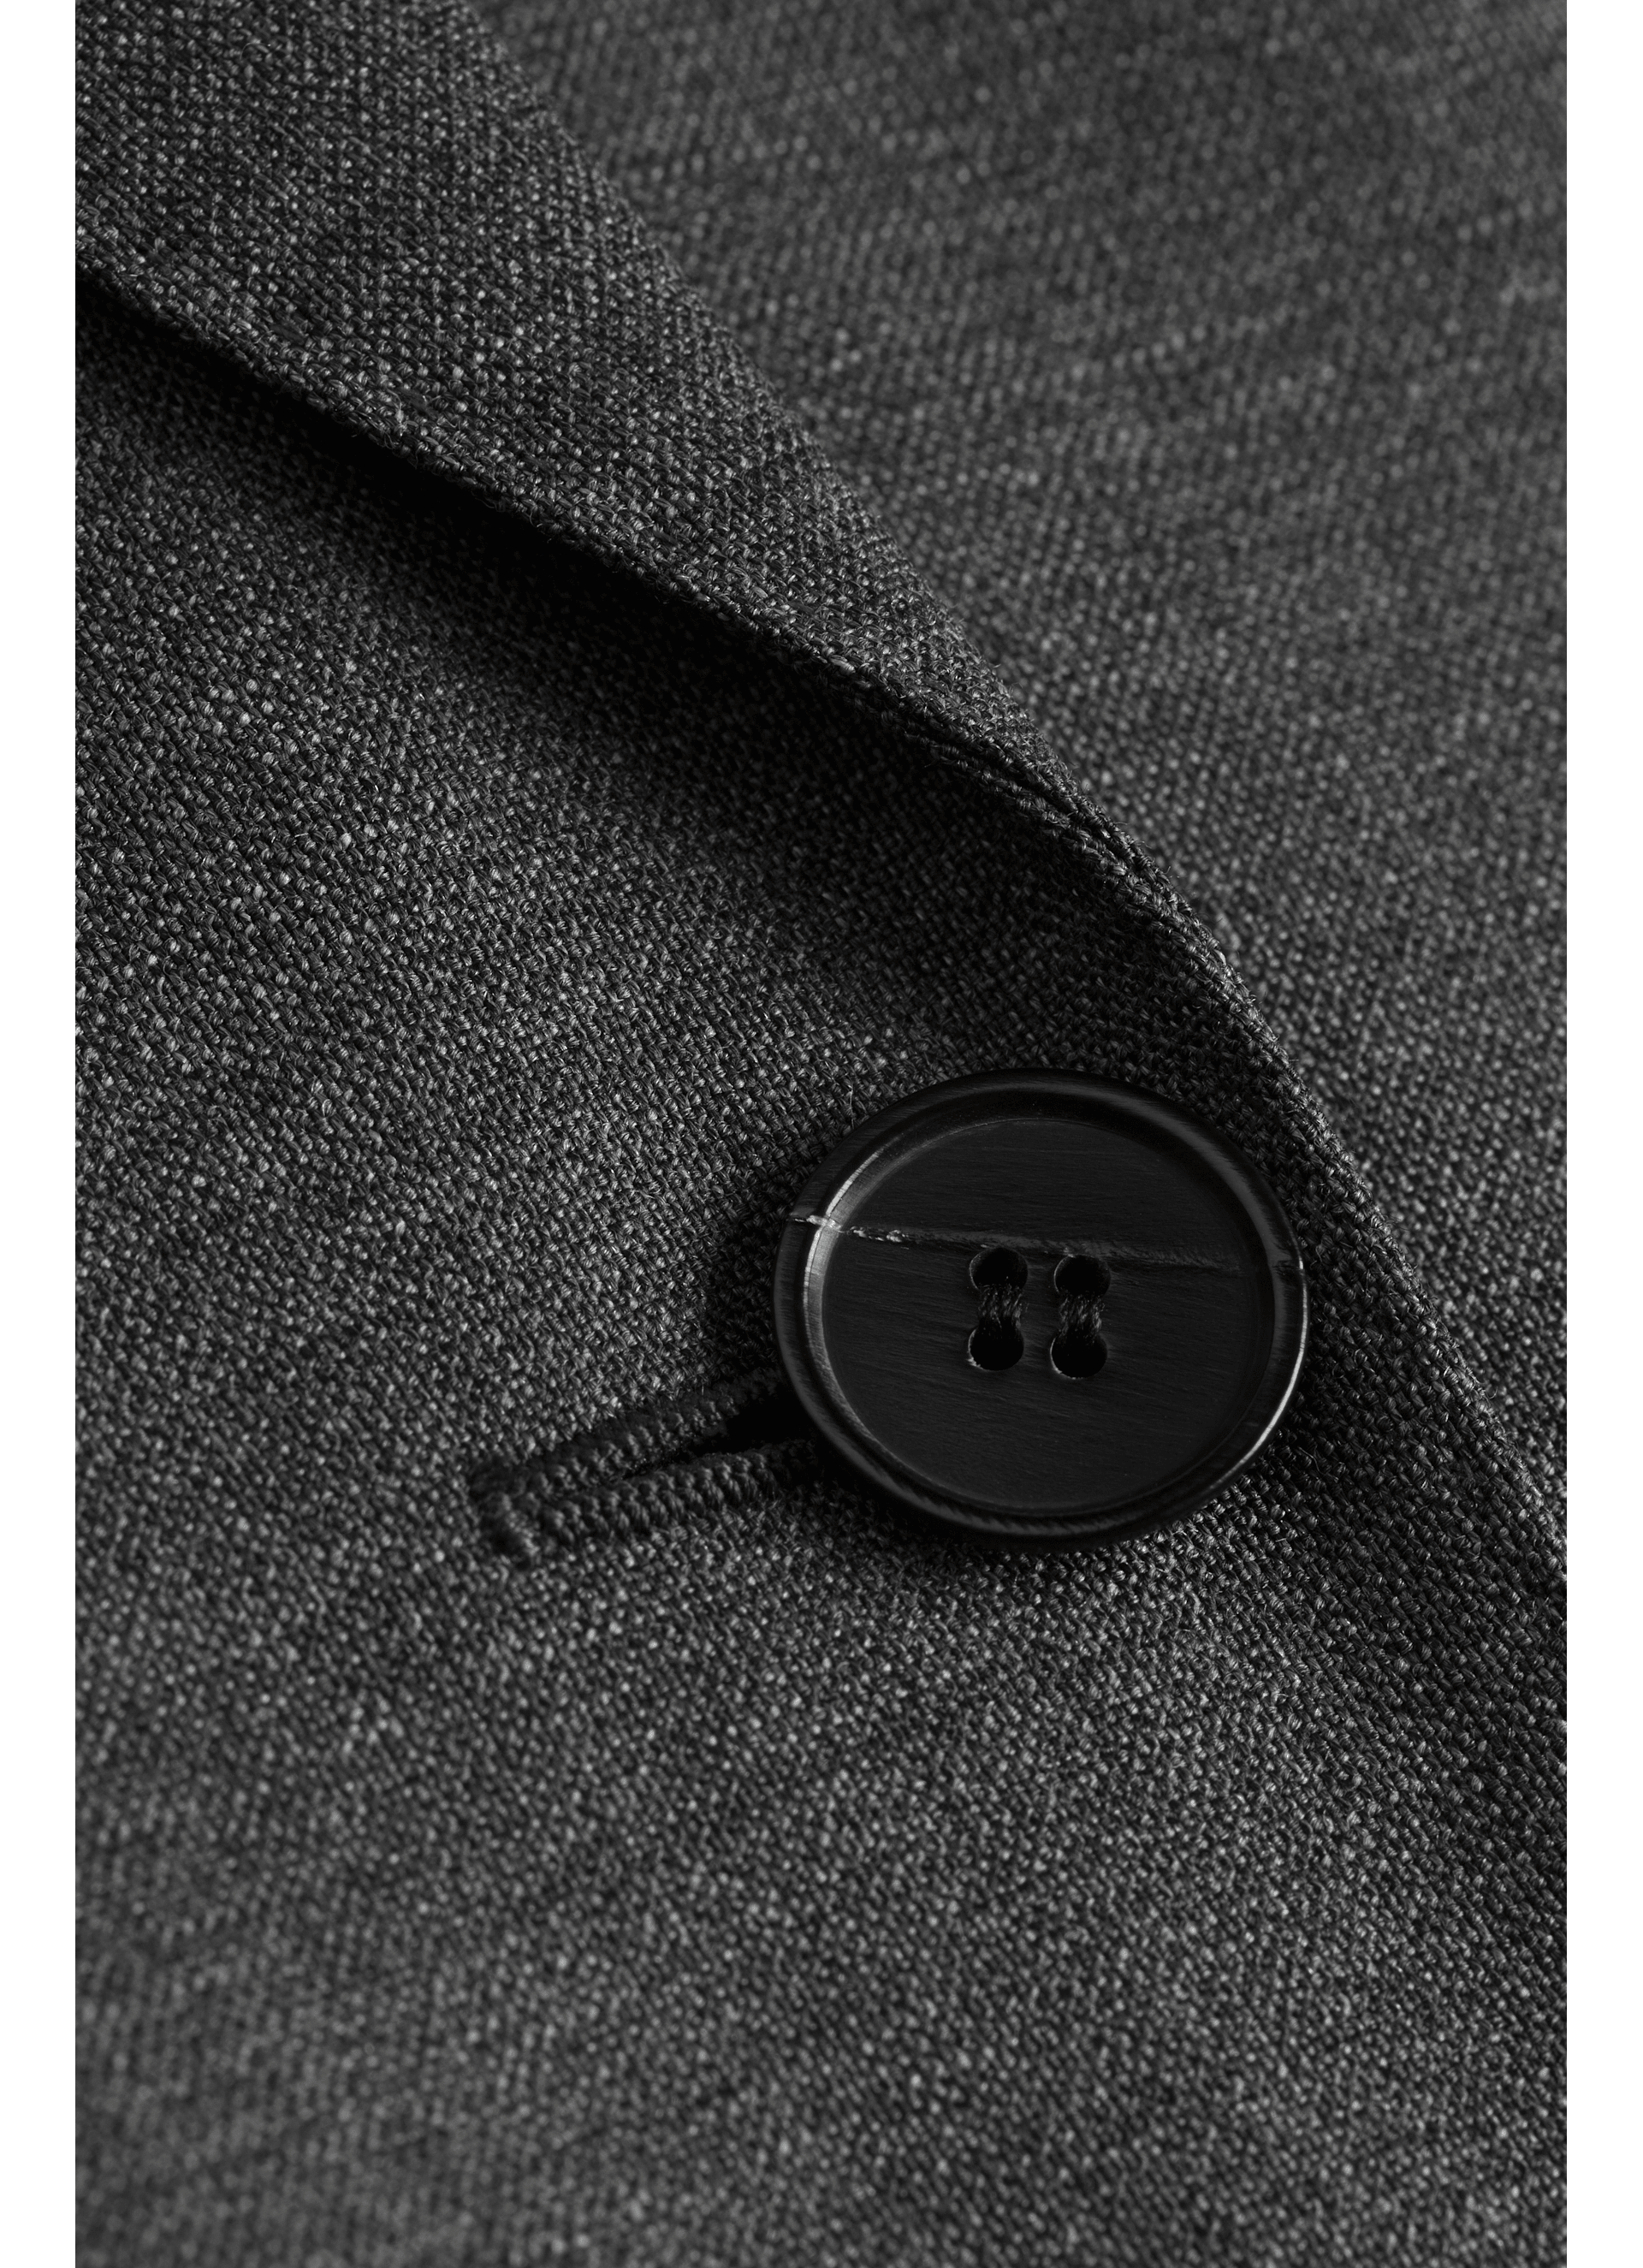 Cameron Grey Suit | SUISTUDIO Online Store